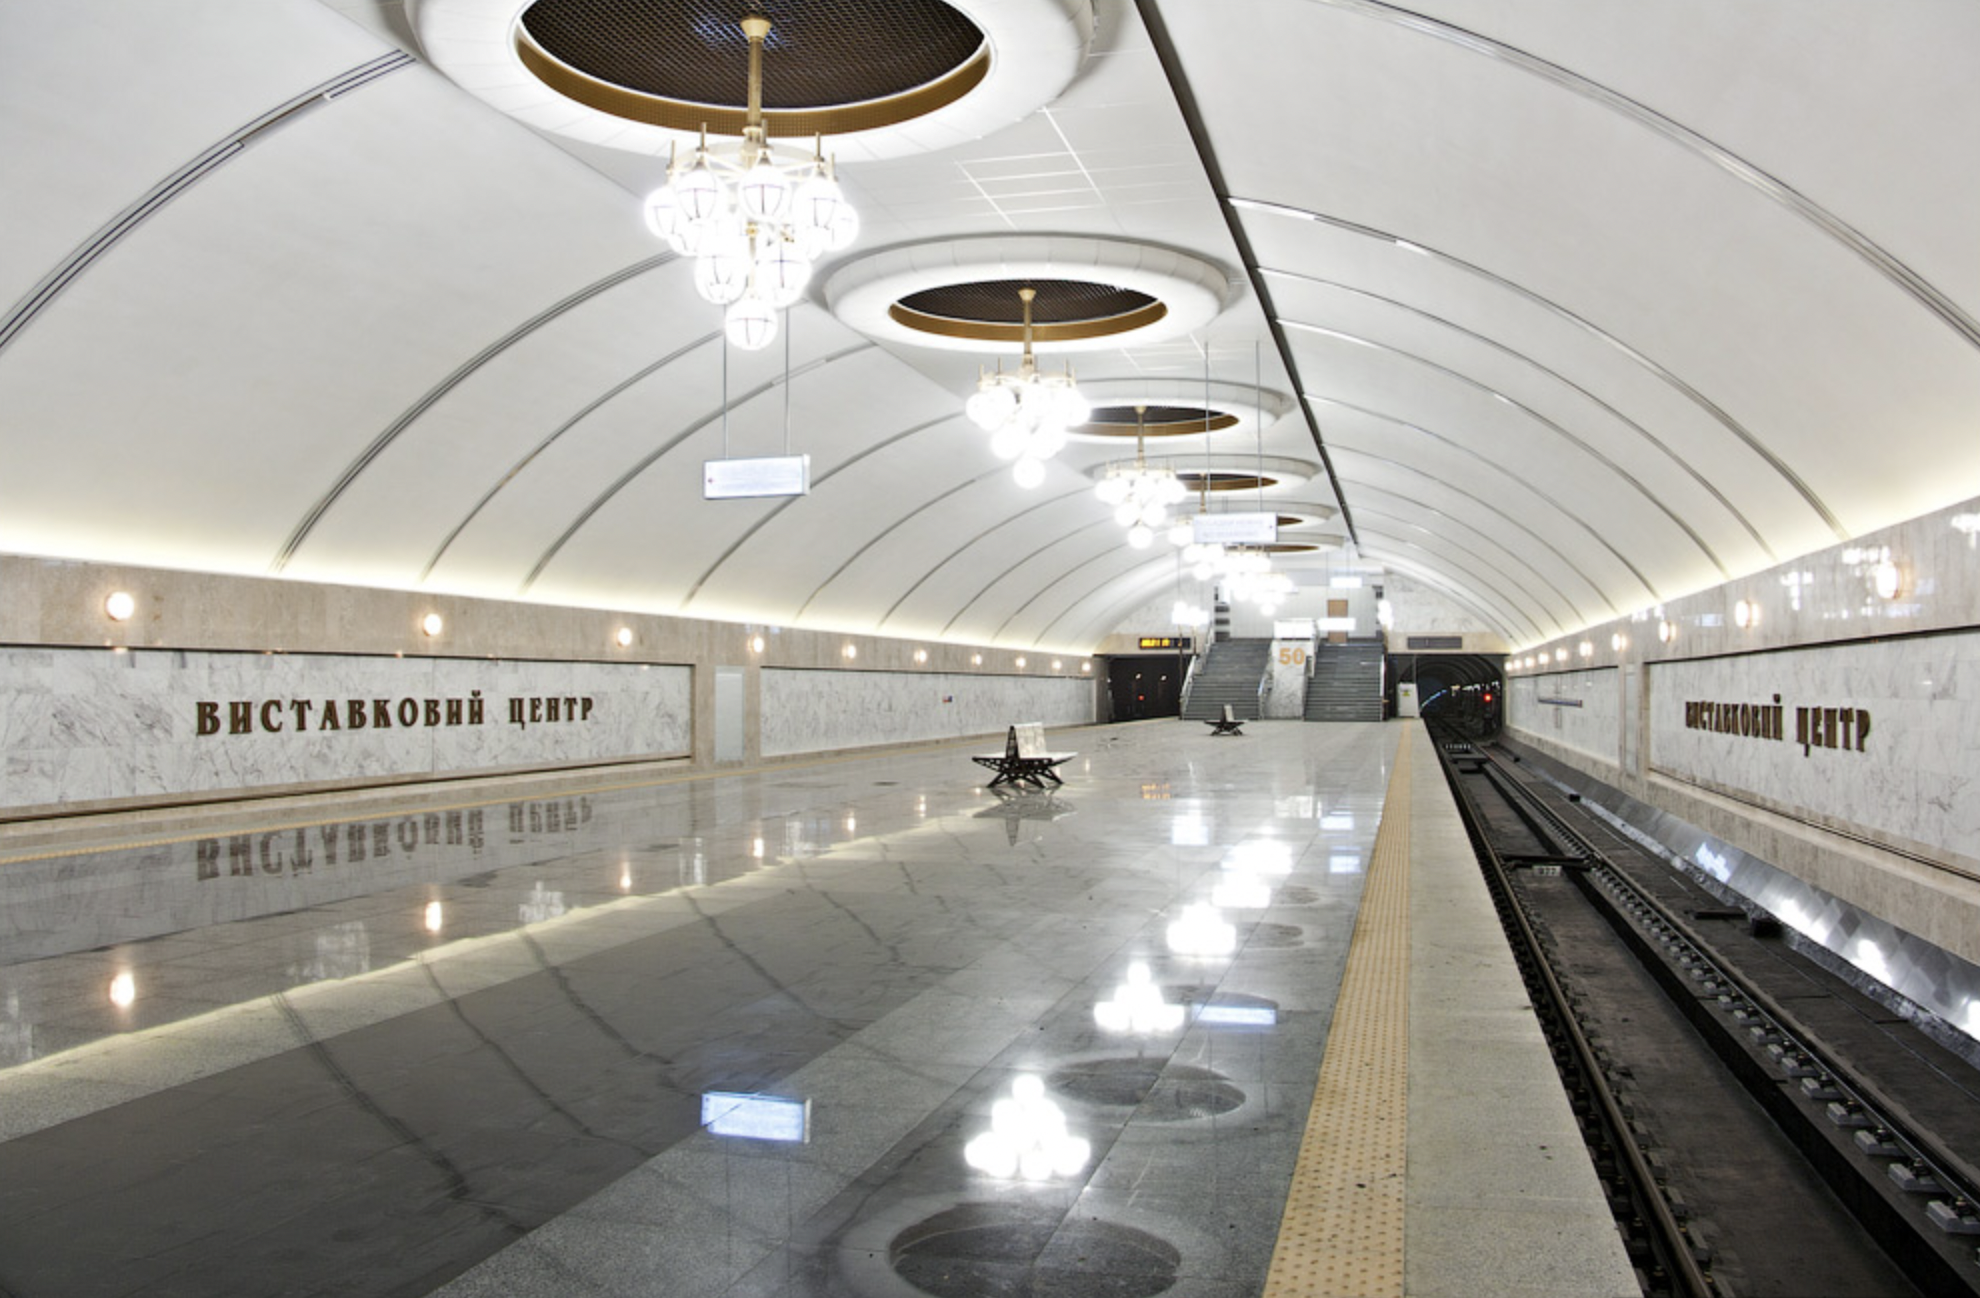 Реконструкцию выхода со станции метро “Выставочный центр” хотят окончить в 2024 году